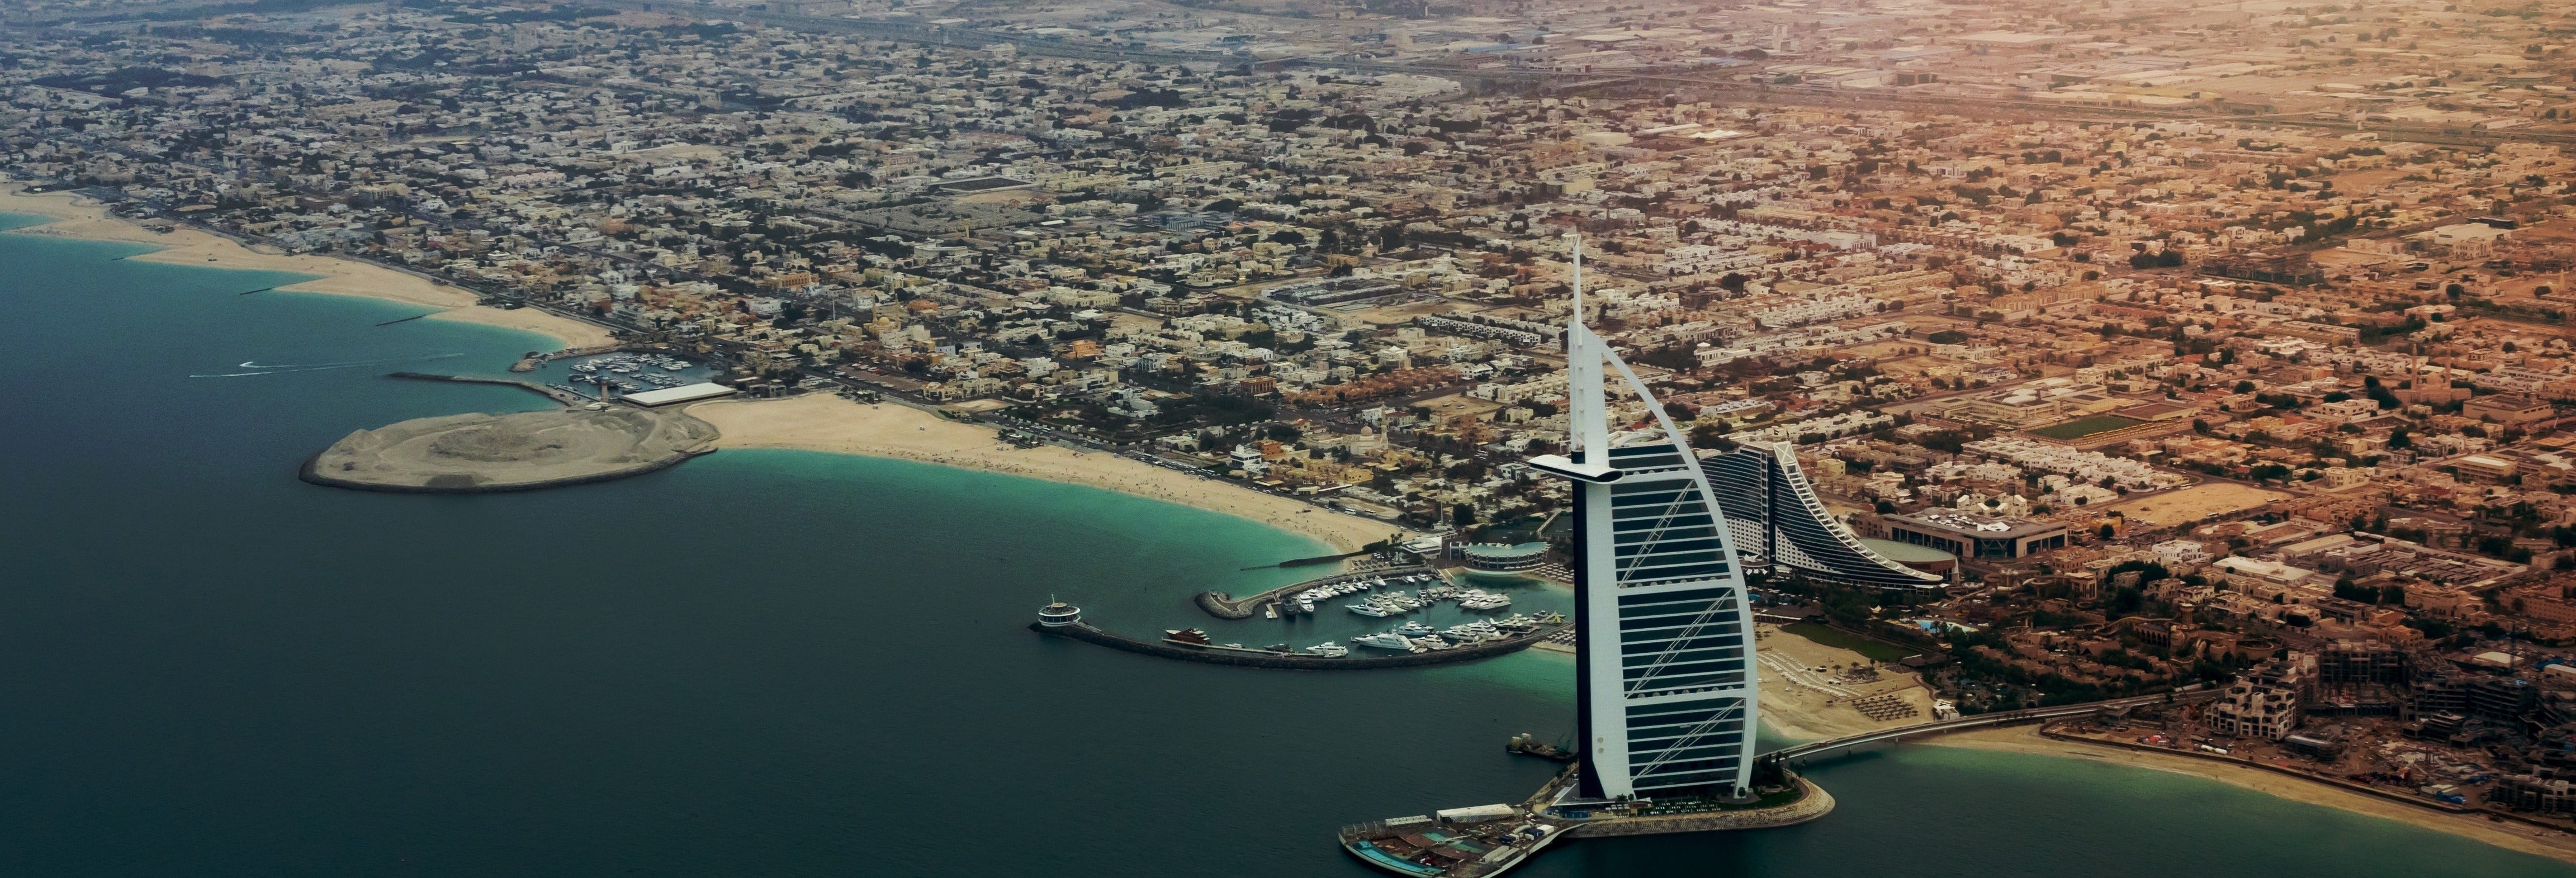 Balade en bateau à moteur à Dubaï